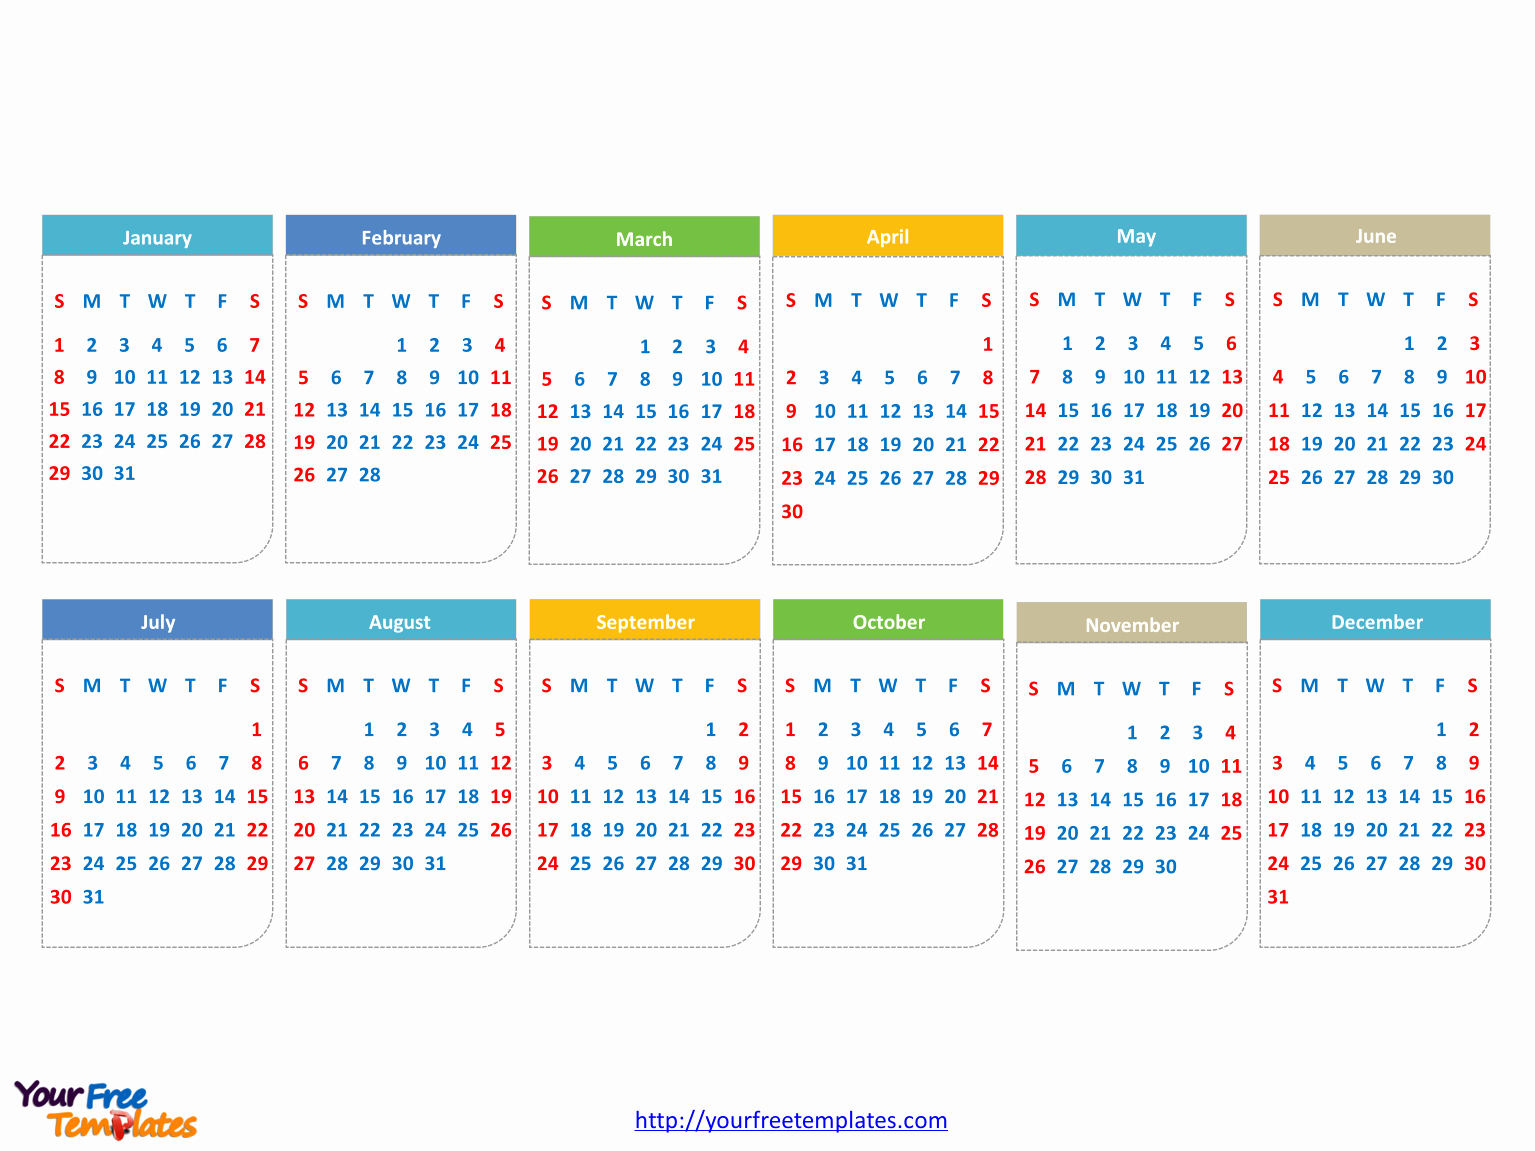 Powerpoint Calendar Template 2017 Inspirational Free 2017 Calendars Powerpoint Template Free Powerpoint